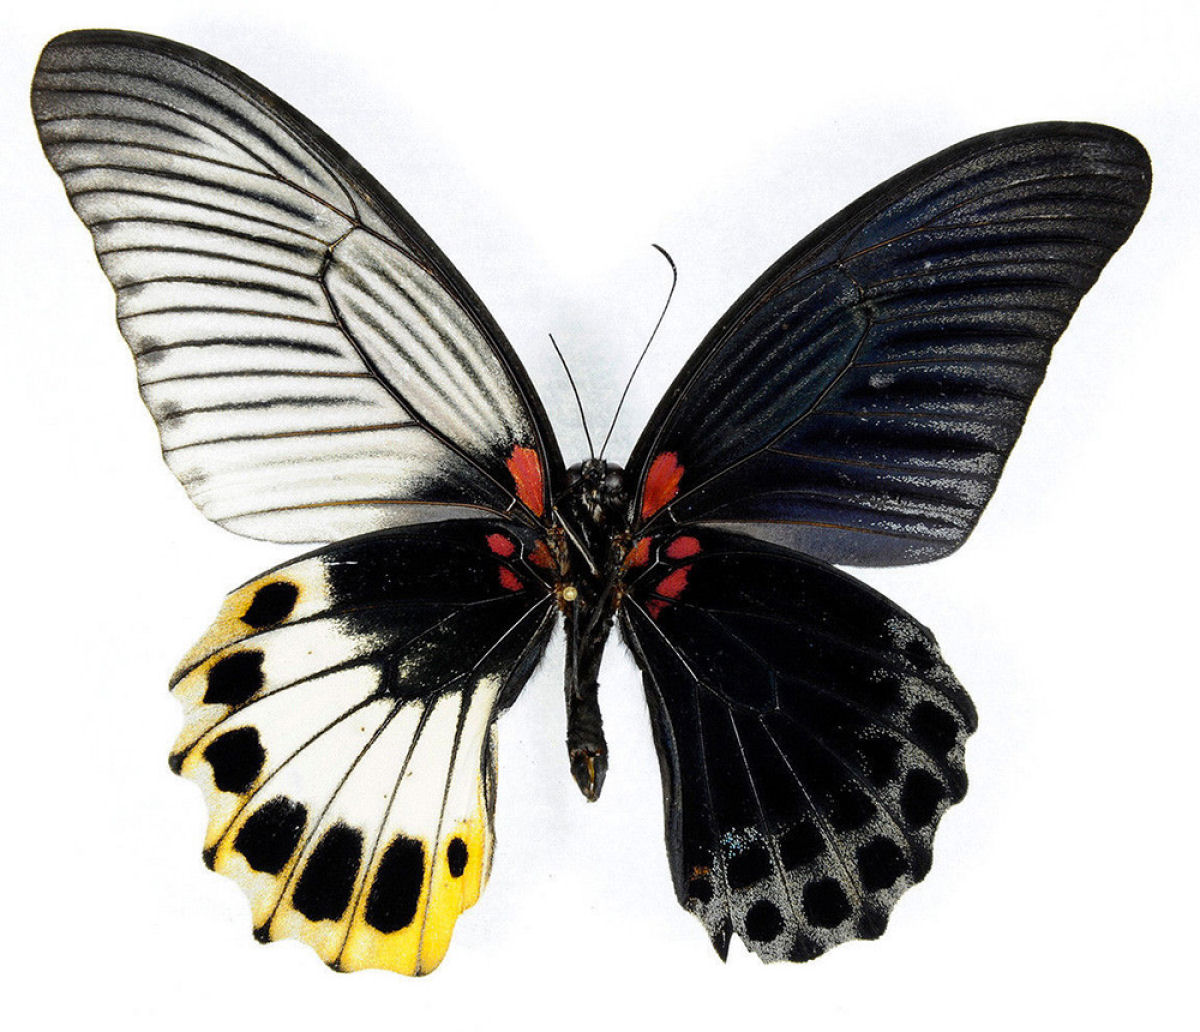 Anomalia gentica cria borboletas com belas asas de cores diferentes 05